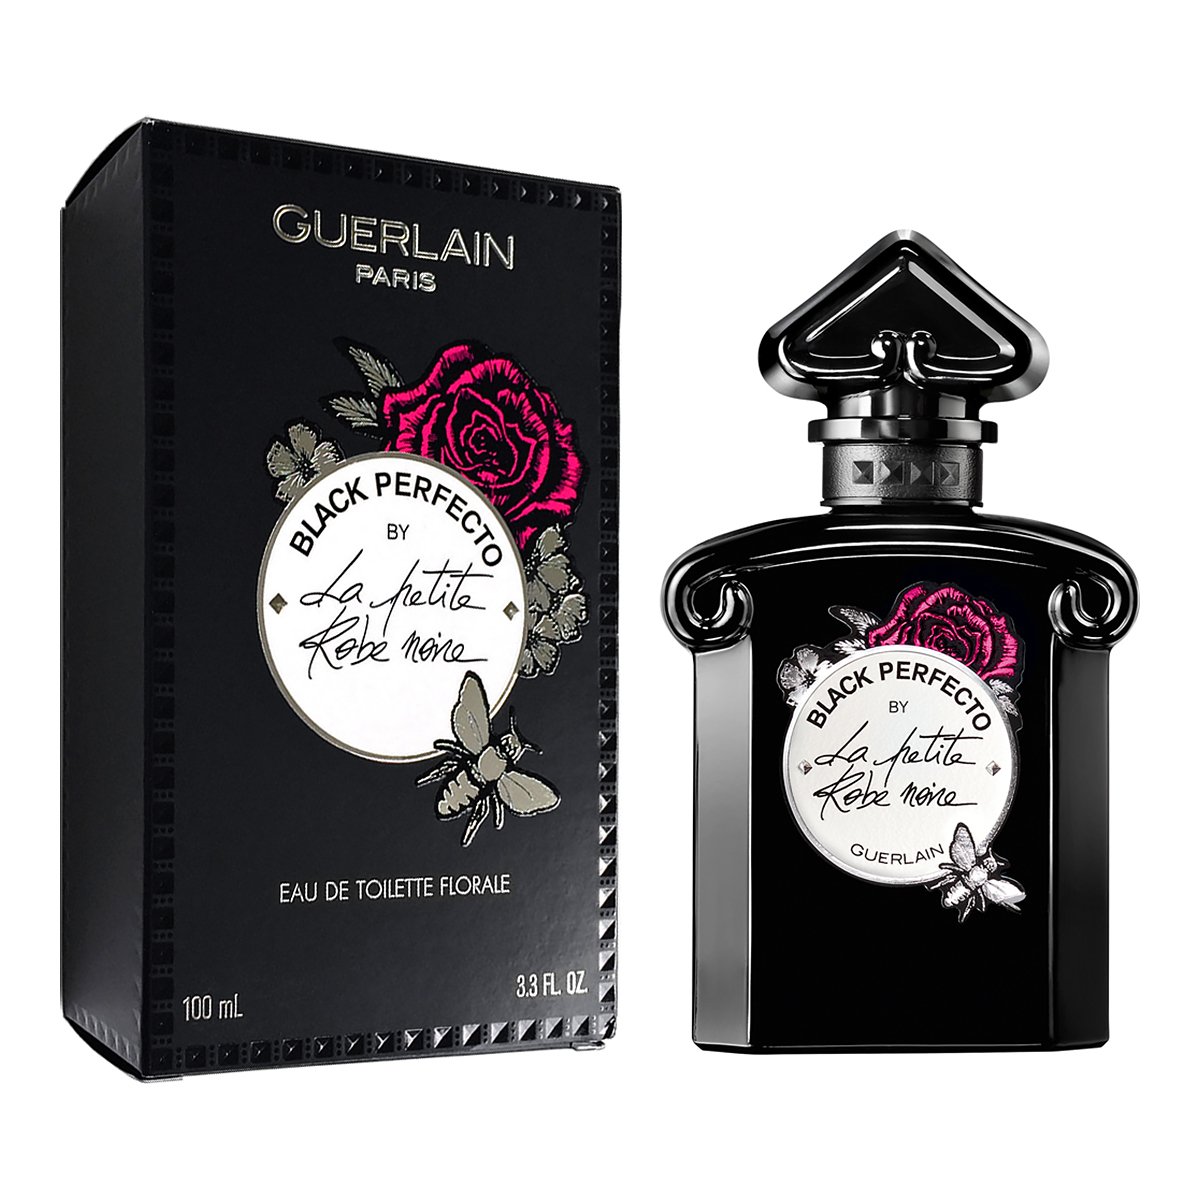 Guerlain Black Perfecto By La Petite Robe Noire Eau De Toilette Florale